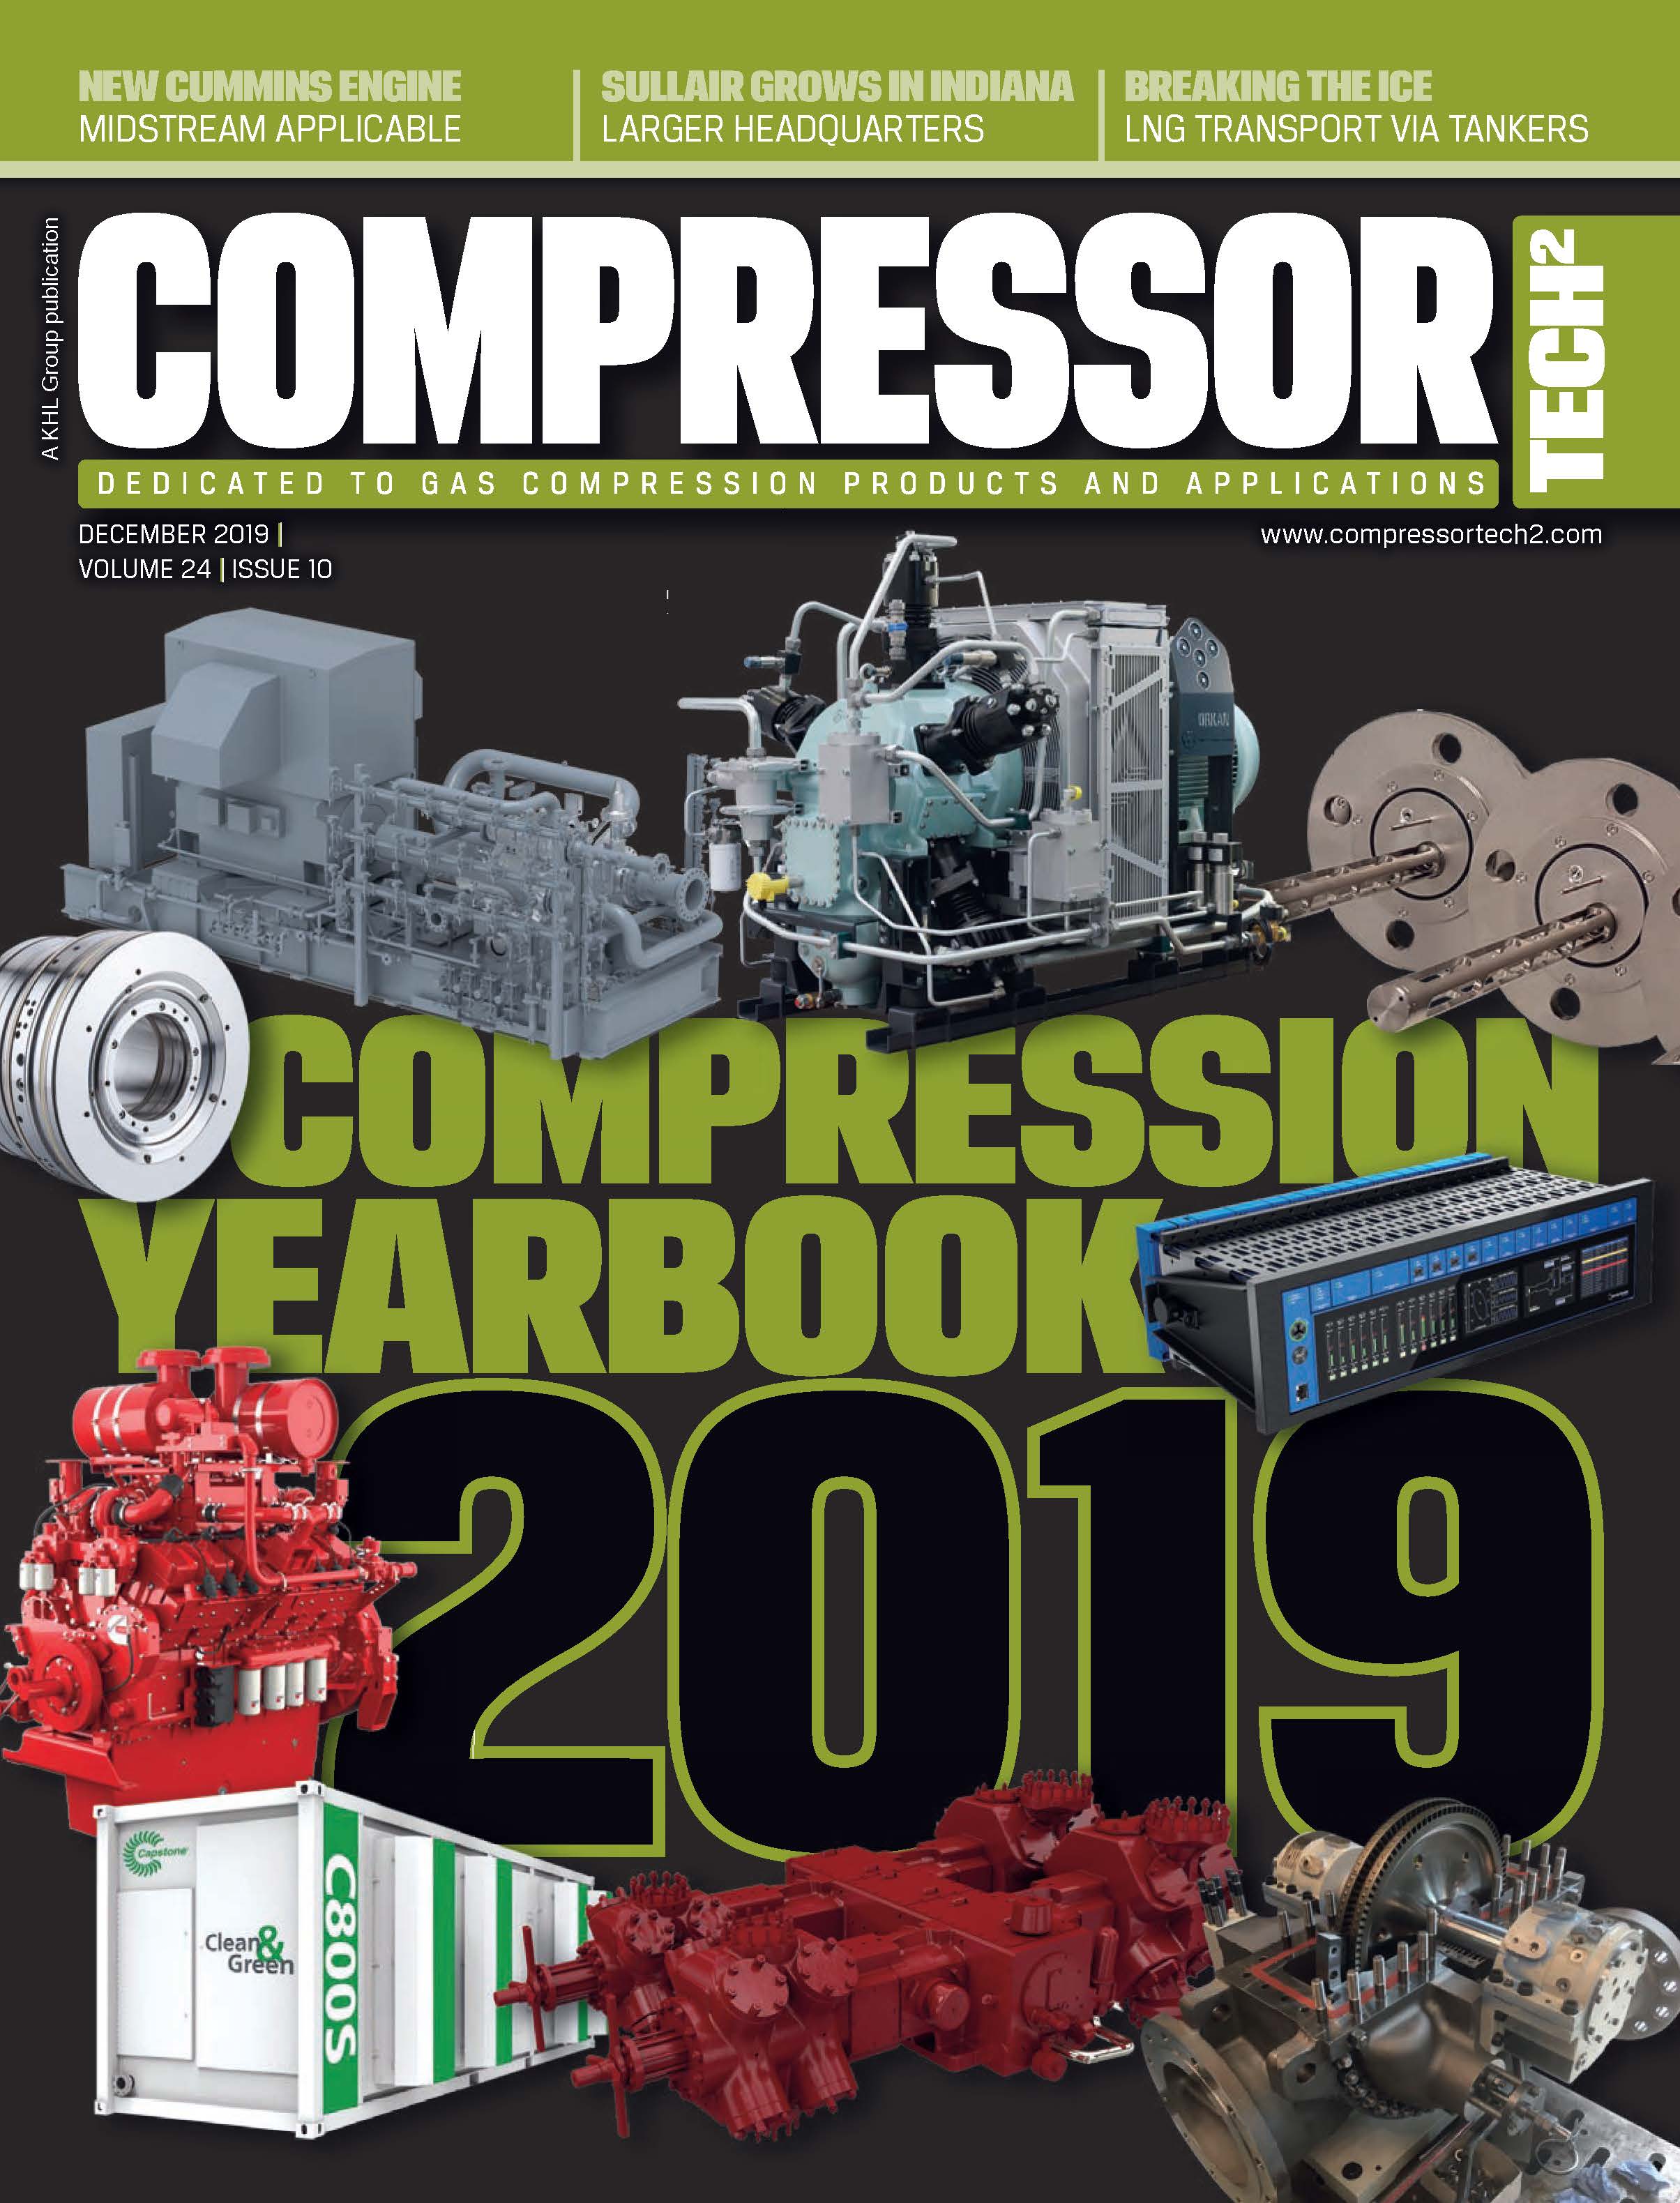 COMPRESSORTech2 December 2019 Issue